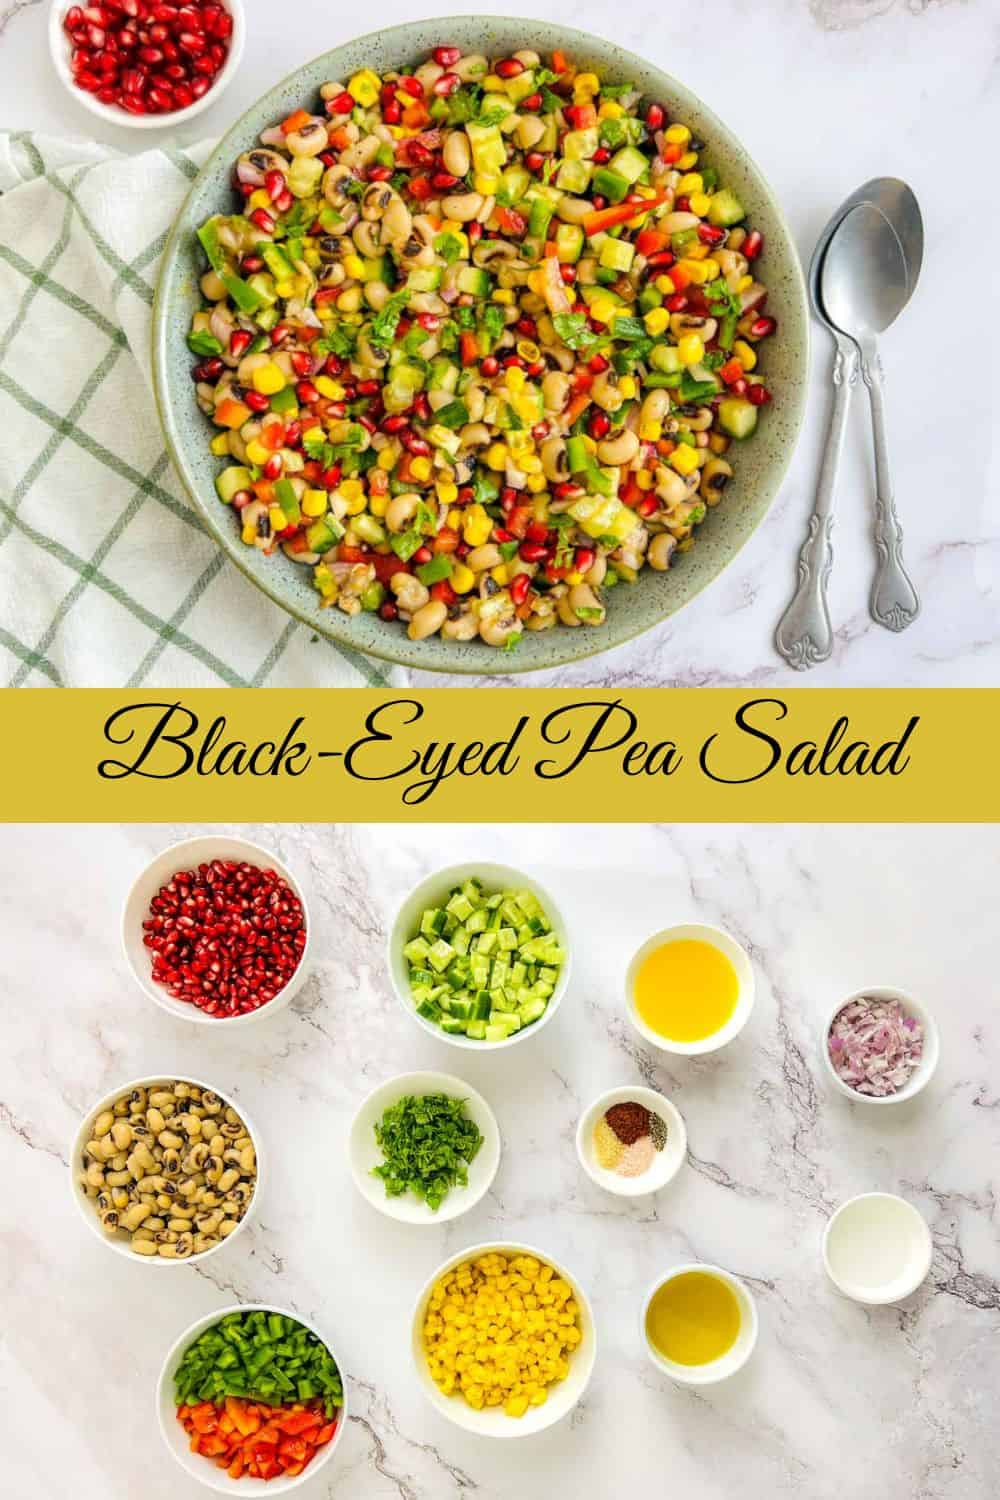 Black eyed peas salad Pinterest image.